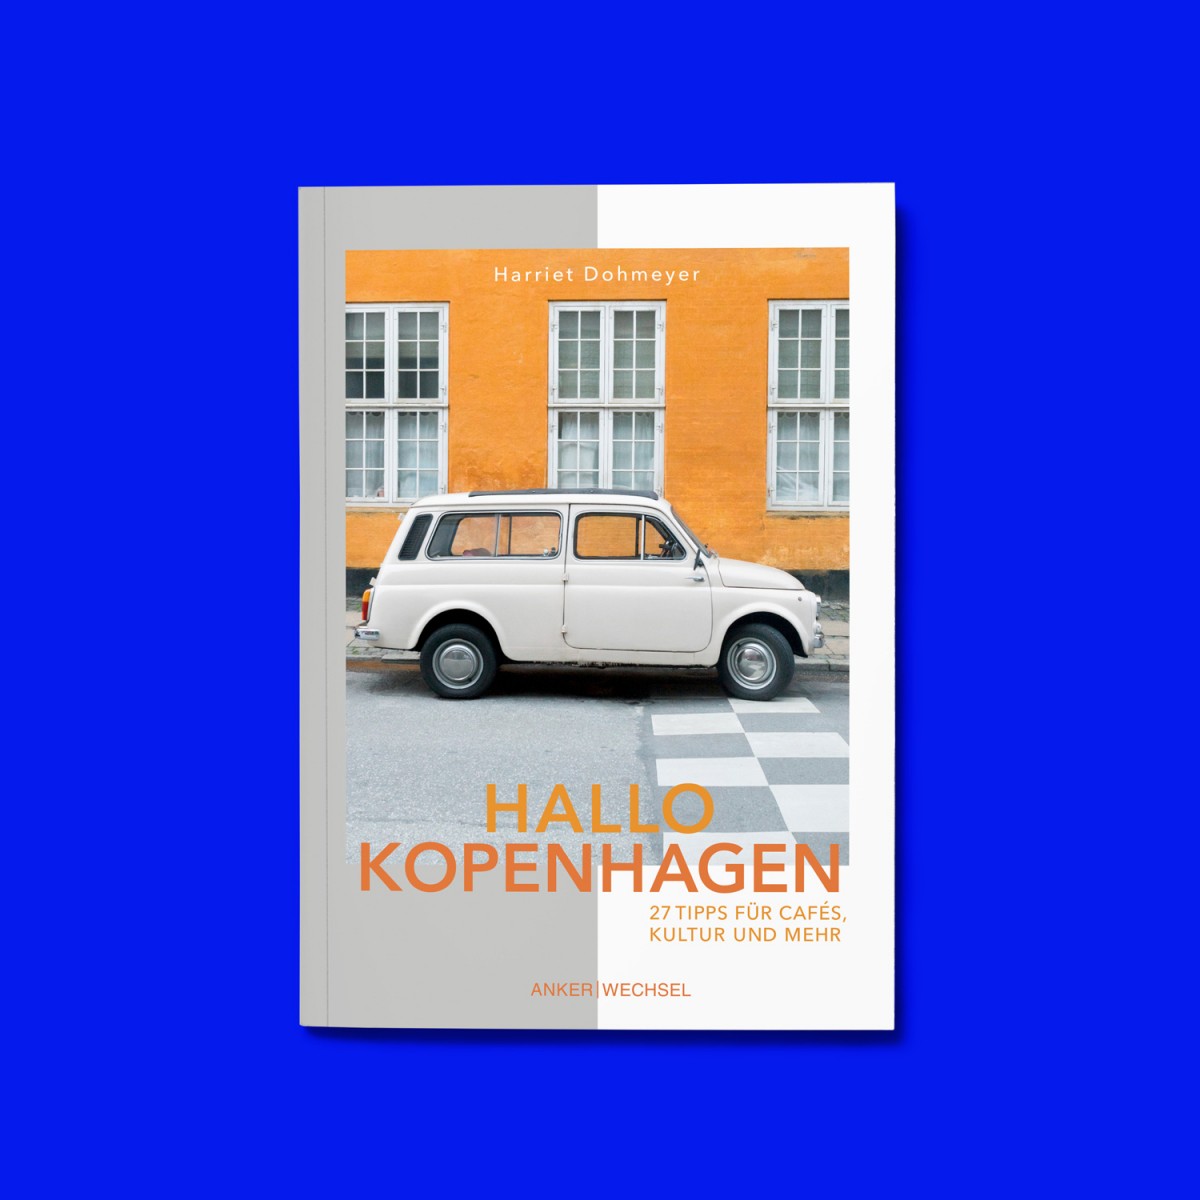 'Hallo Kopenhagen‘: neue nordische Küche, besondere Kaffeeorte und versteckte Highlights in ruhigen Seitenstraßen / Ankerwechsel Verlag